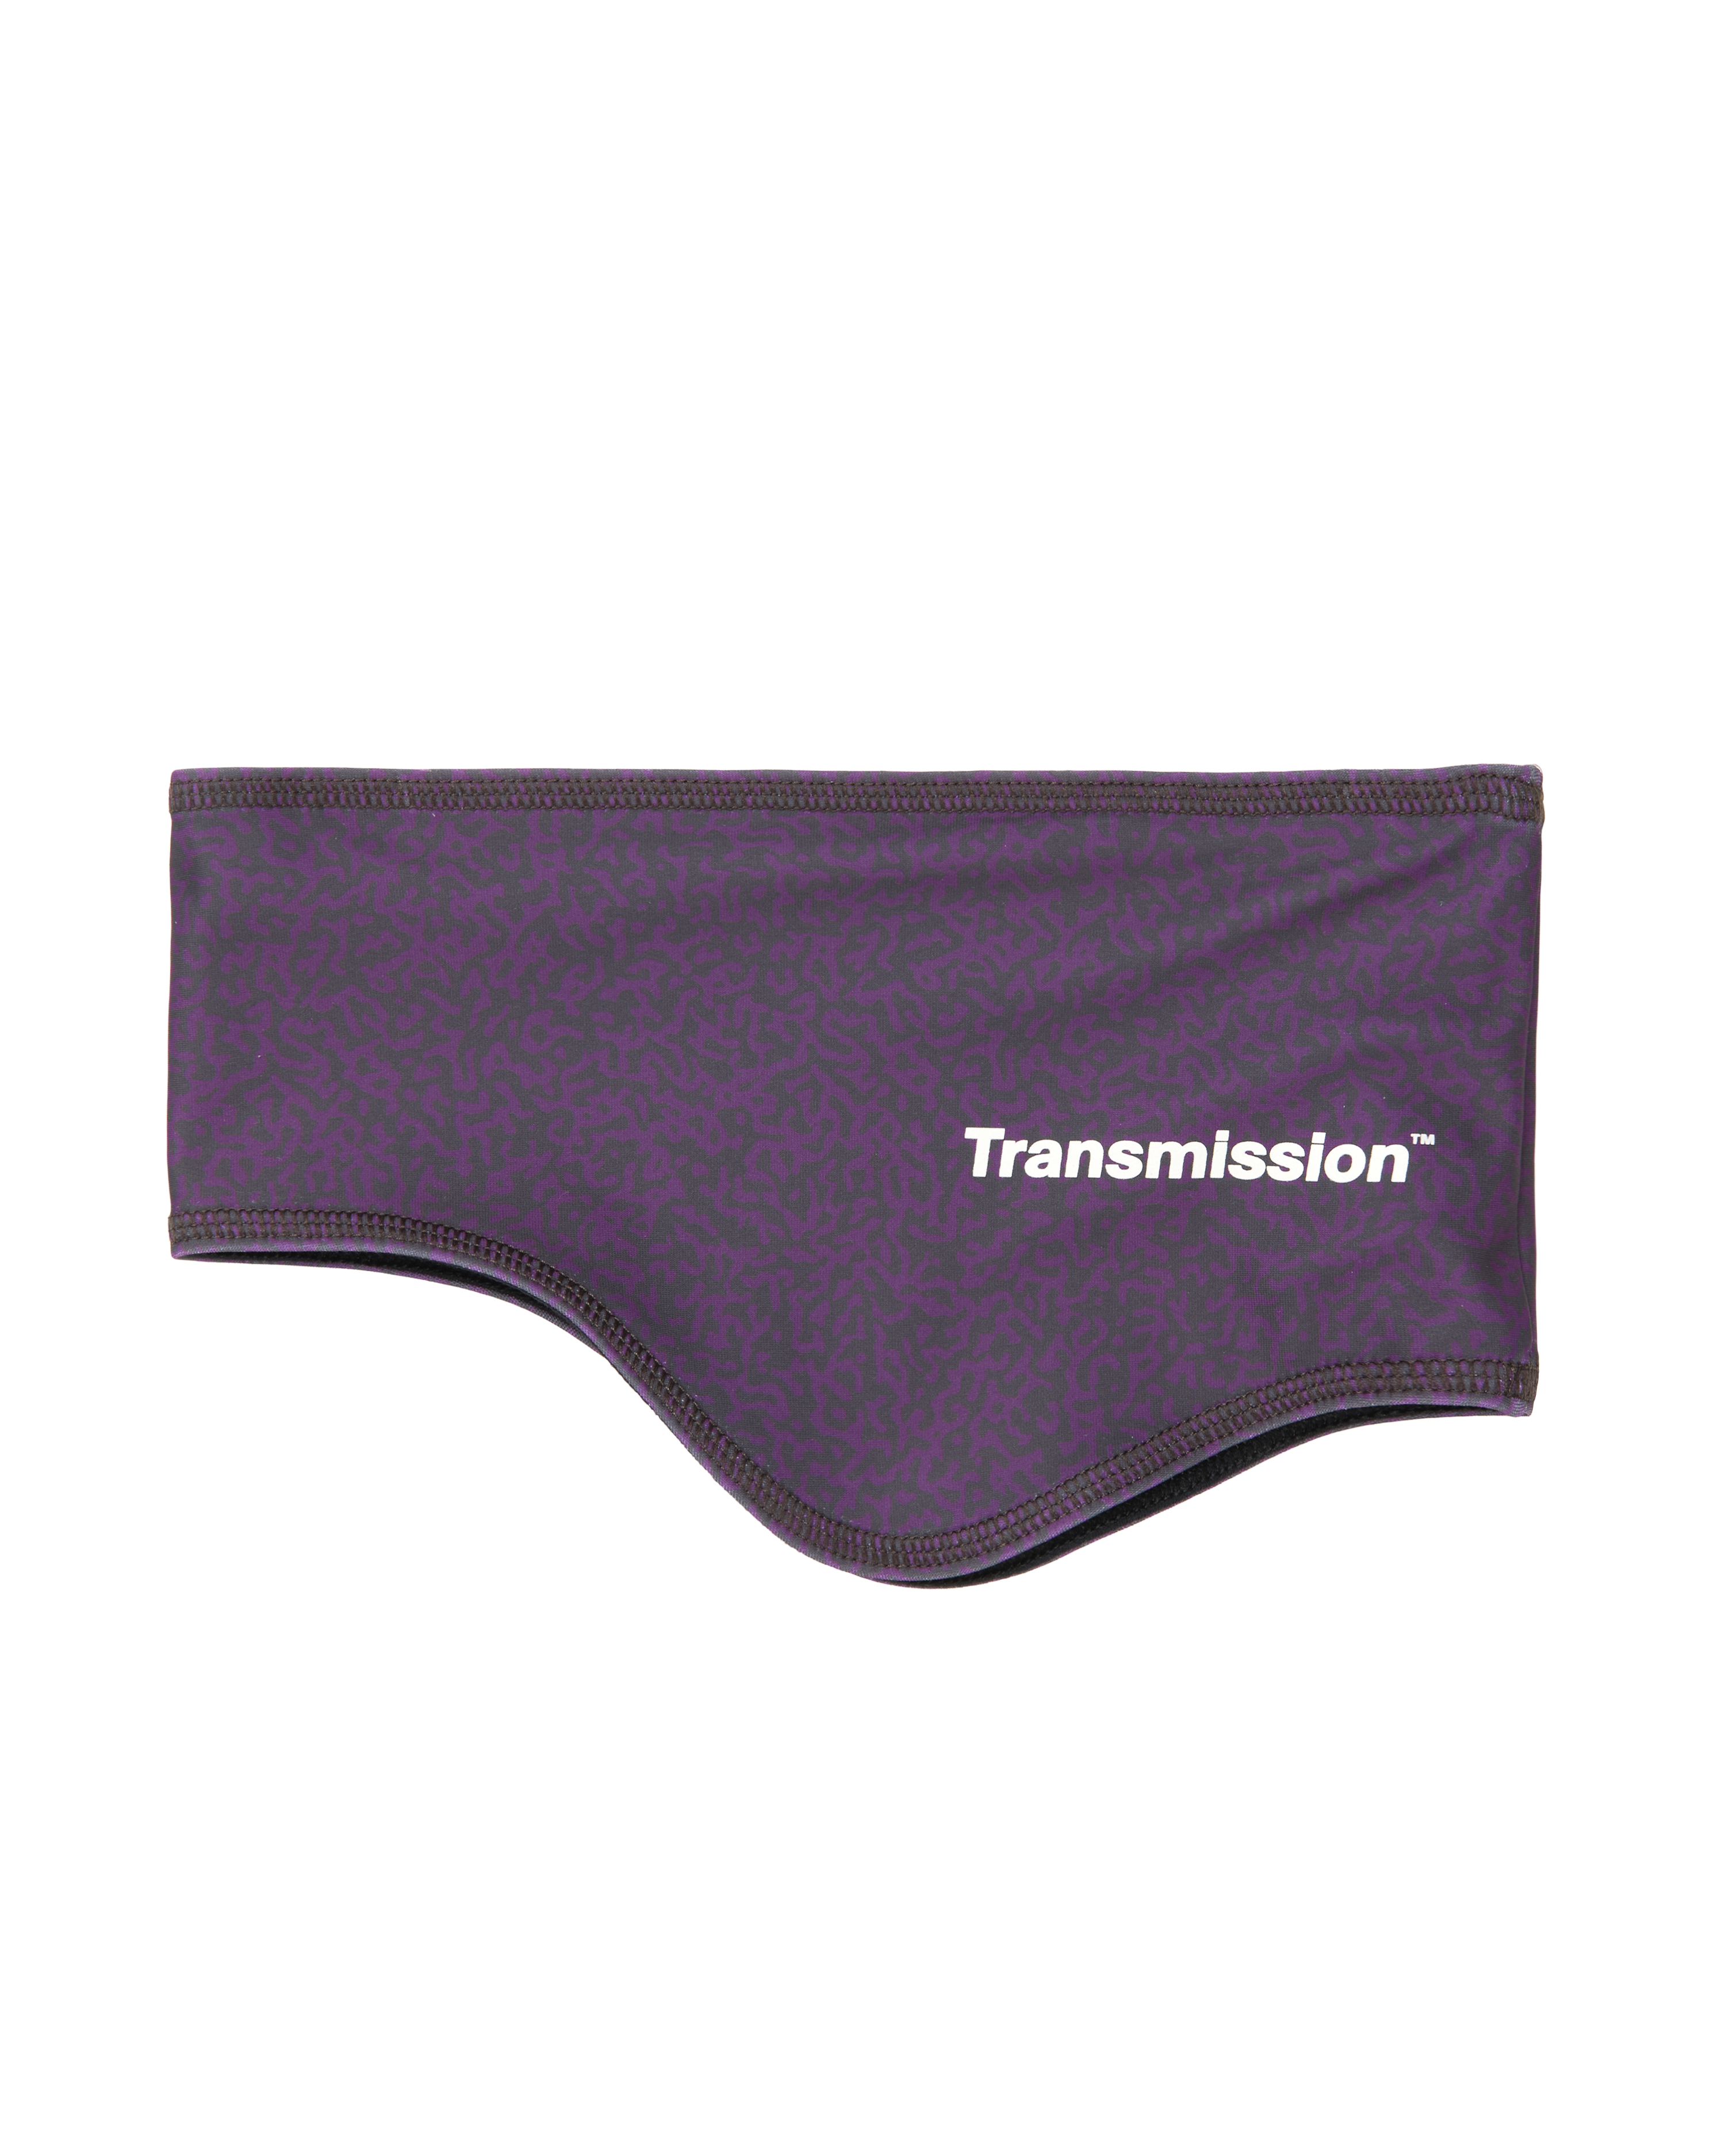 T.K.O. Thermal Headband - Dark Purple Transmission